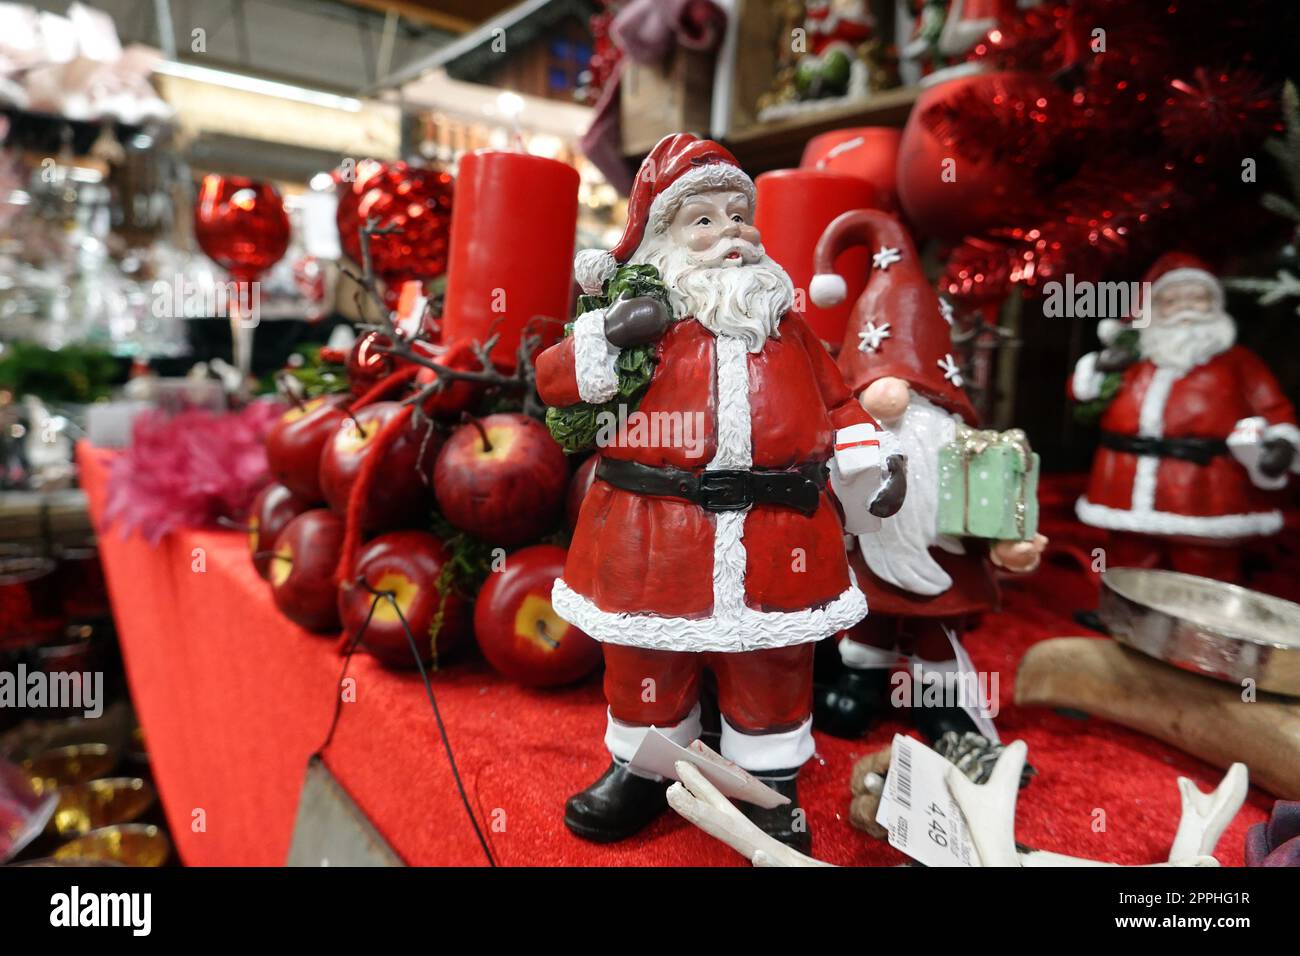 Weihnachtsdekoration in einem Baumarkt - Symbolbild Banque D'Images